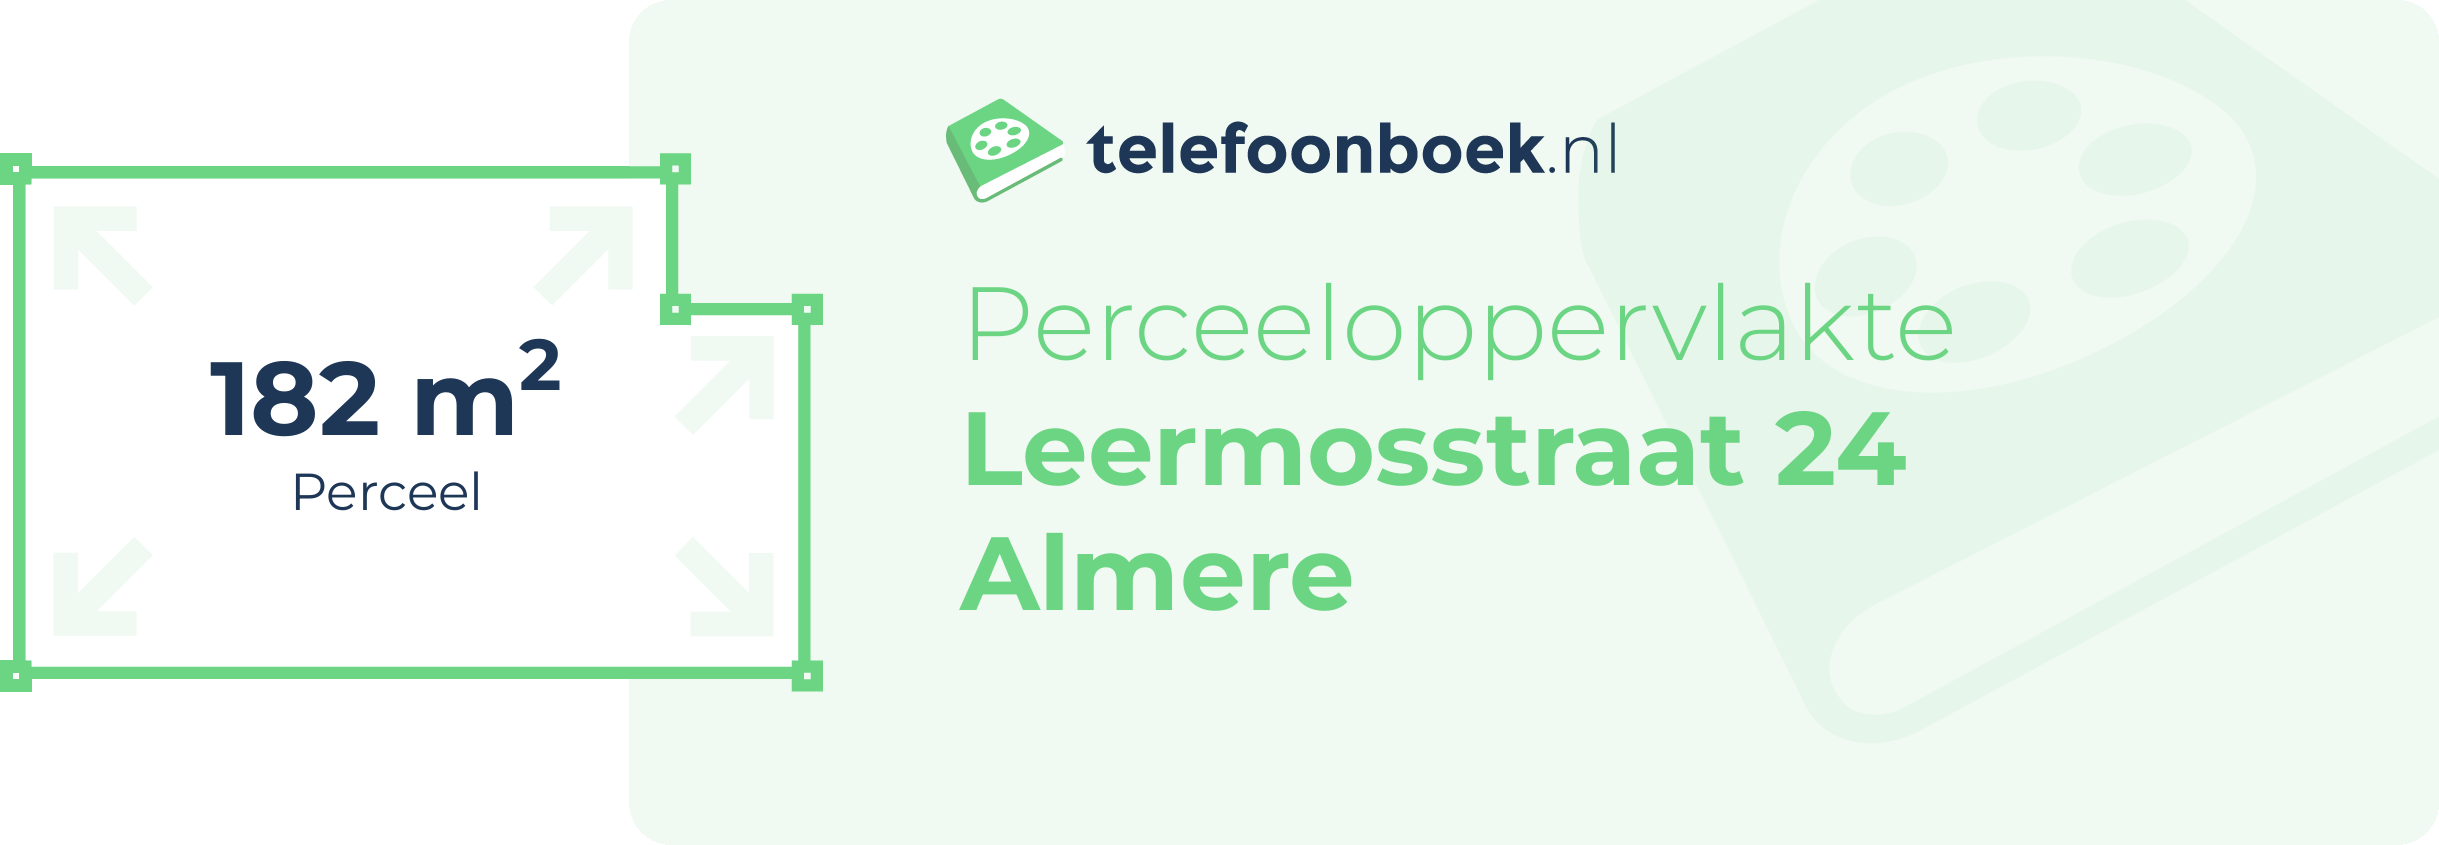 Perceeloppervlakte Leermosstraat 24 Almere